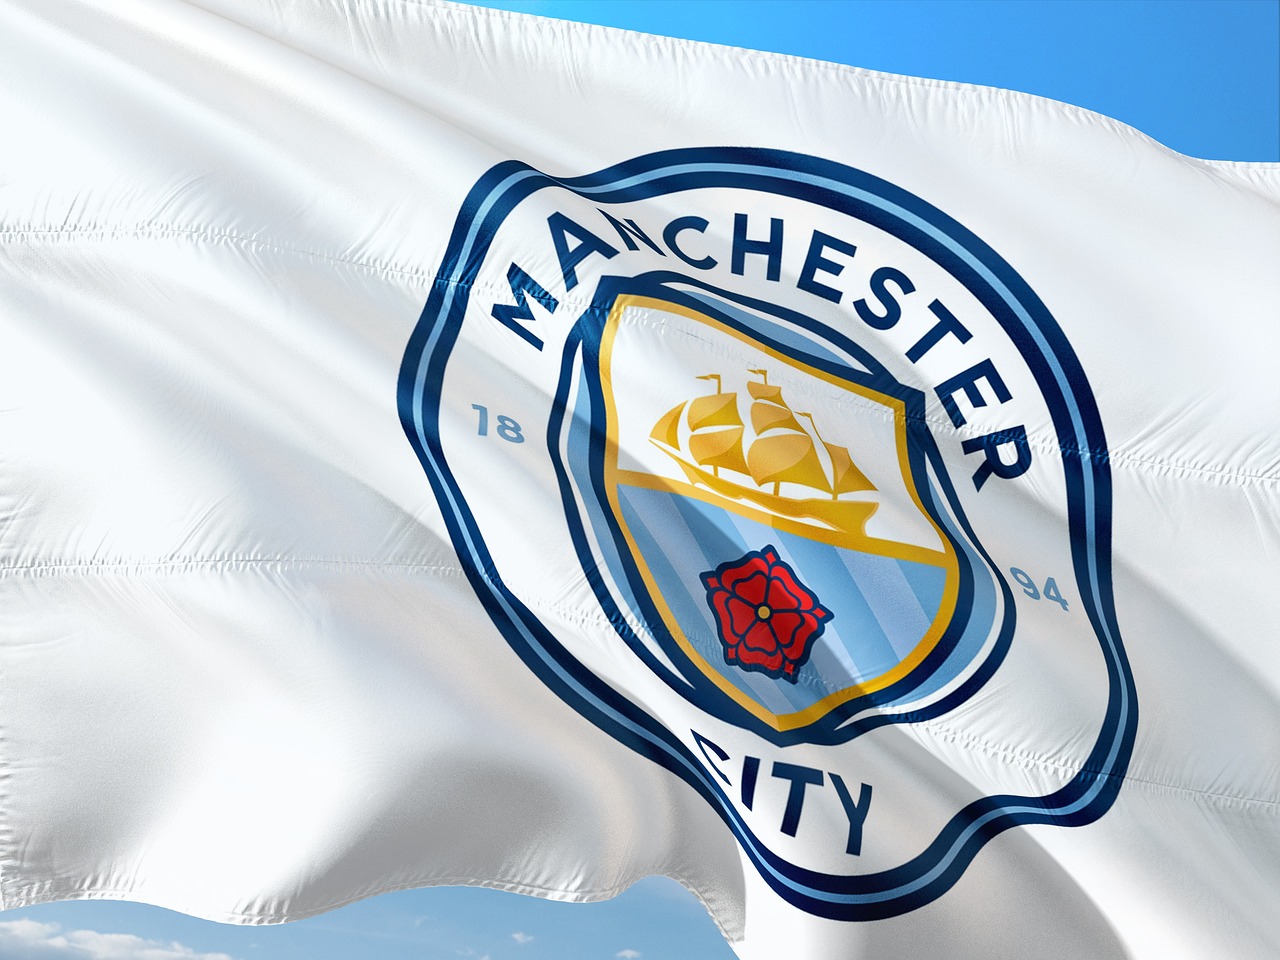 Zvládne Manchester City náročný peloton?